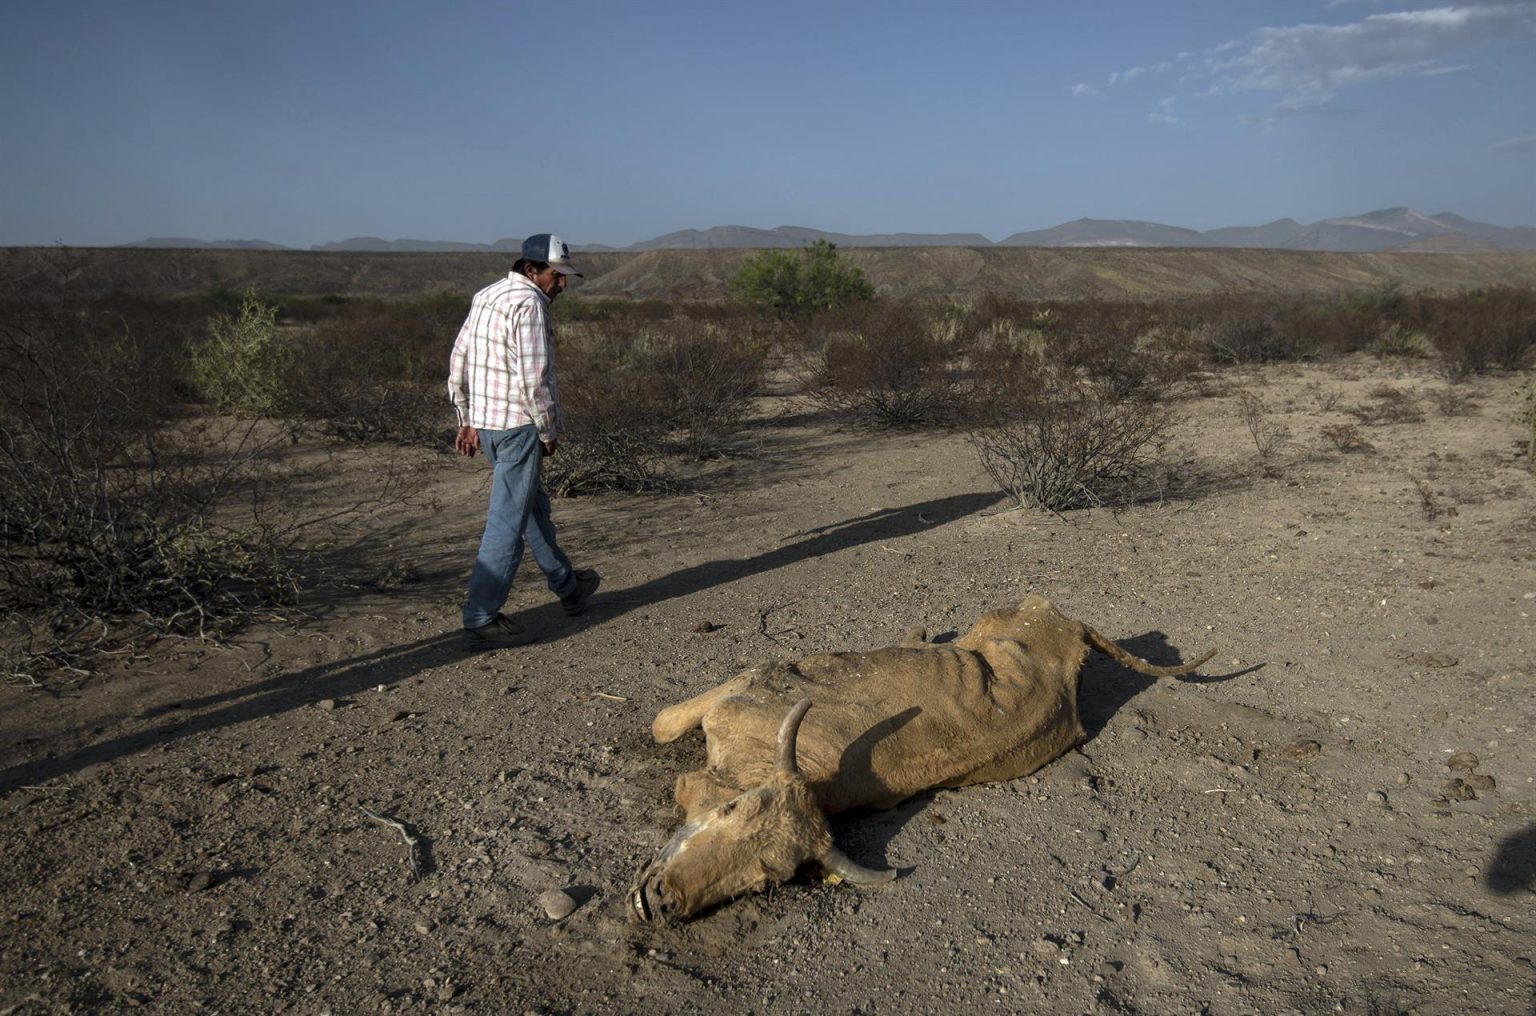 Una persona observa un animal muerto el 23 de junio de 2022, debido a sequía en el municipio de General Cepeda, en Coahuila (México).  EFE/Miguel Sierra